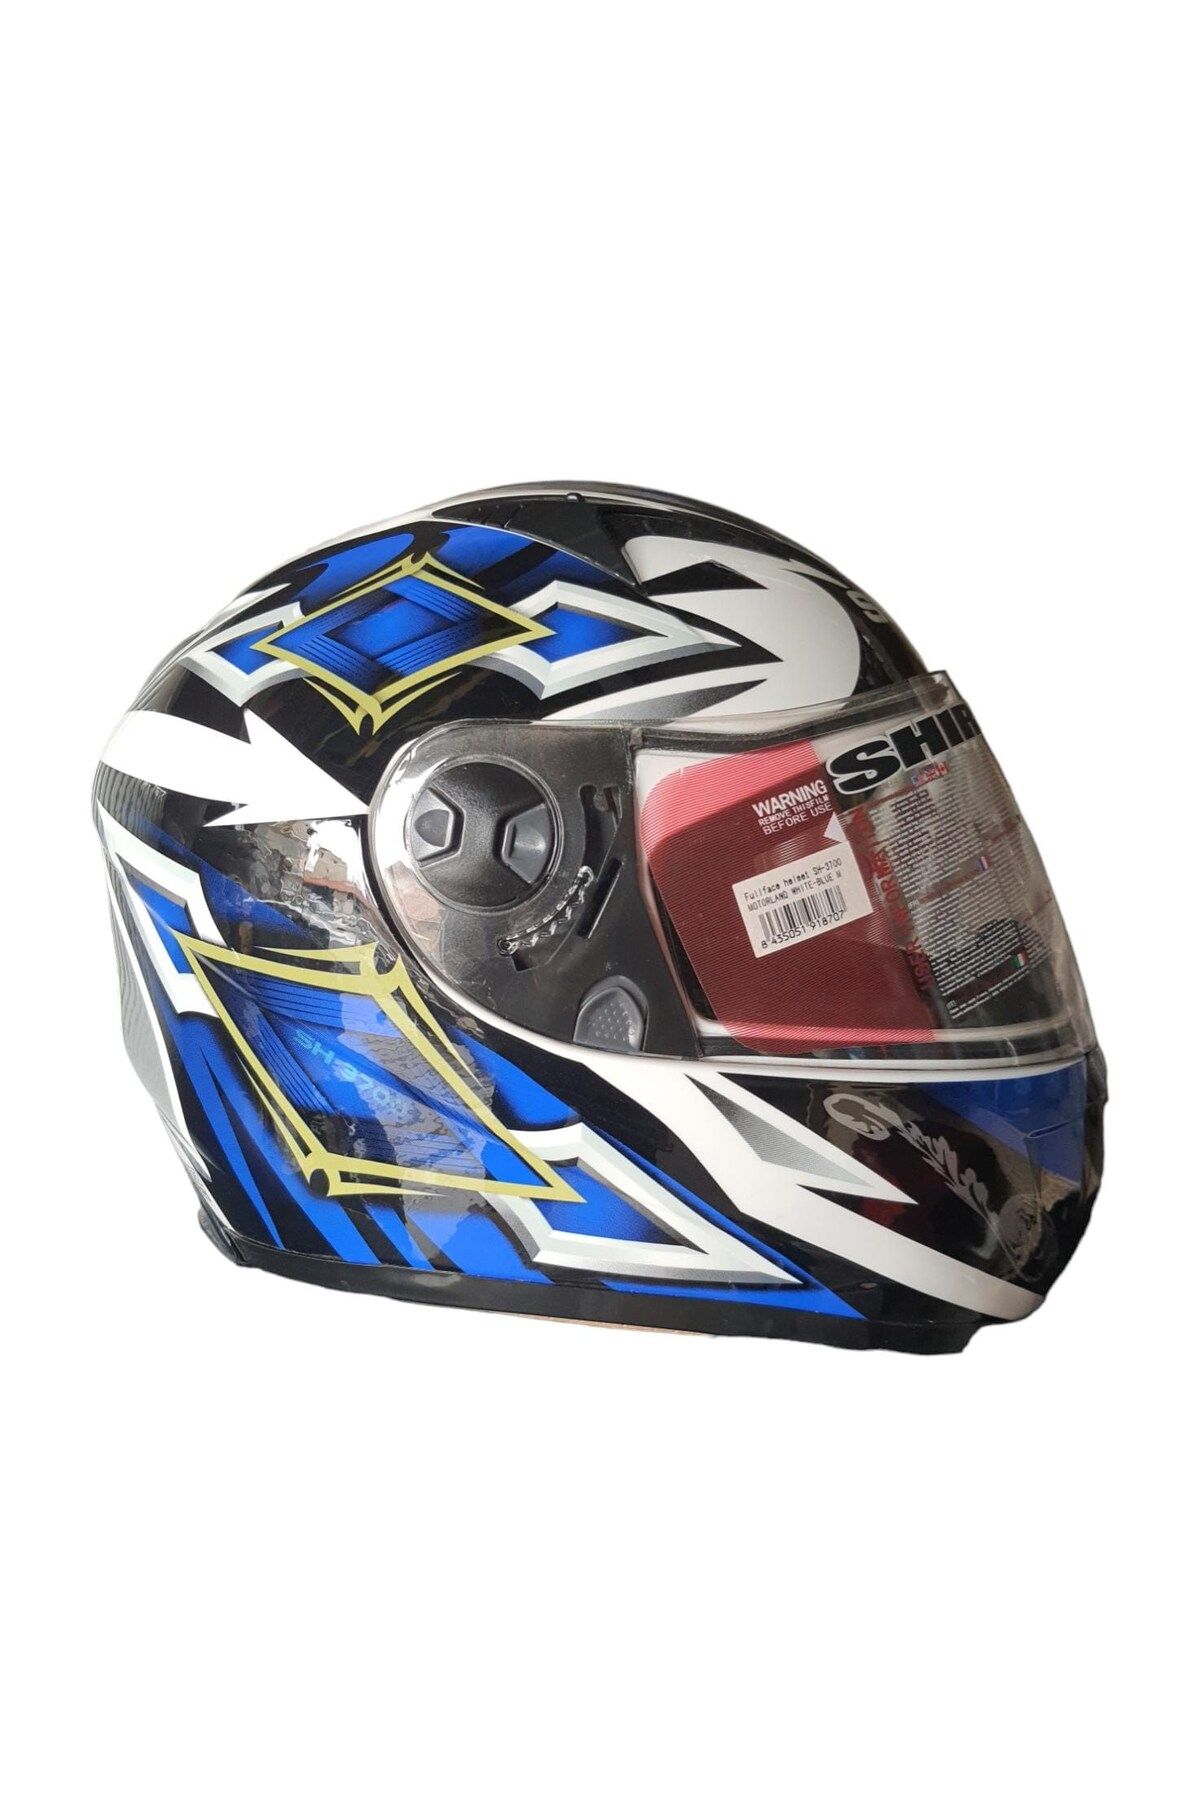 Shiro Shıro Sh3700 Helmet Full Face Motosiklet Kask